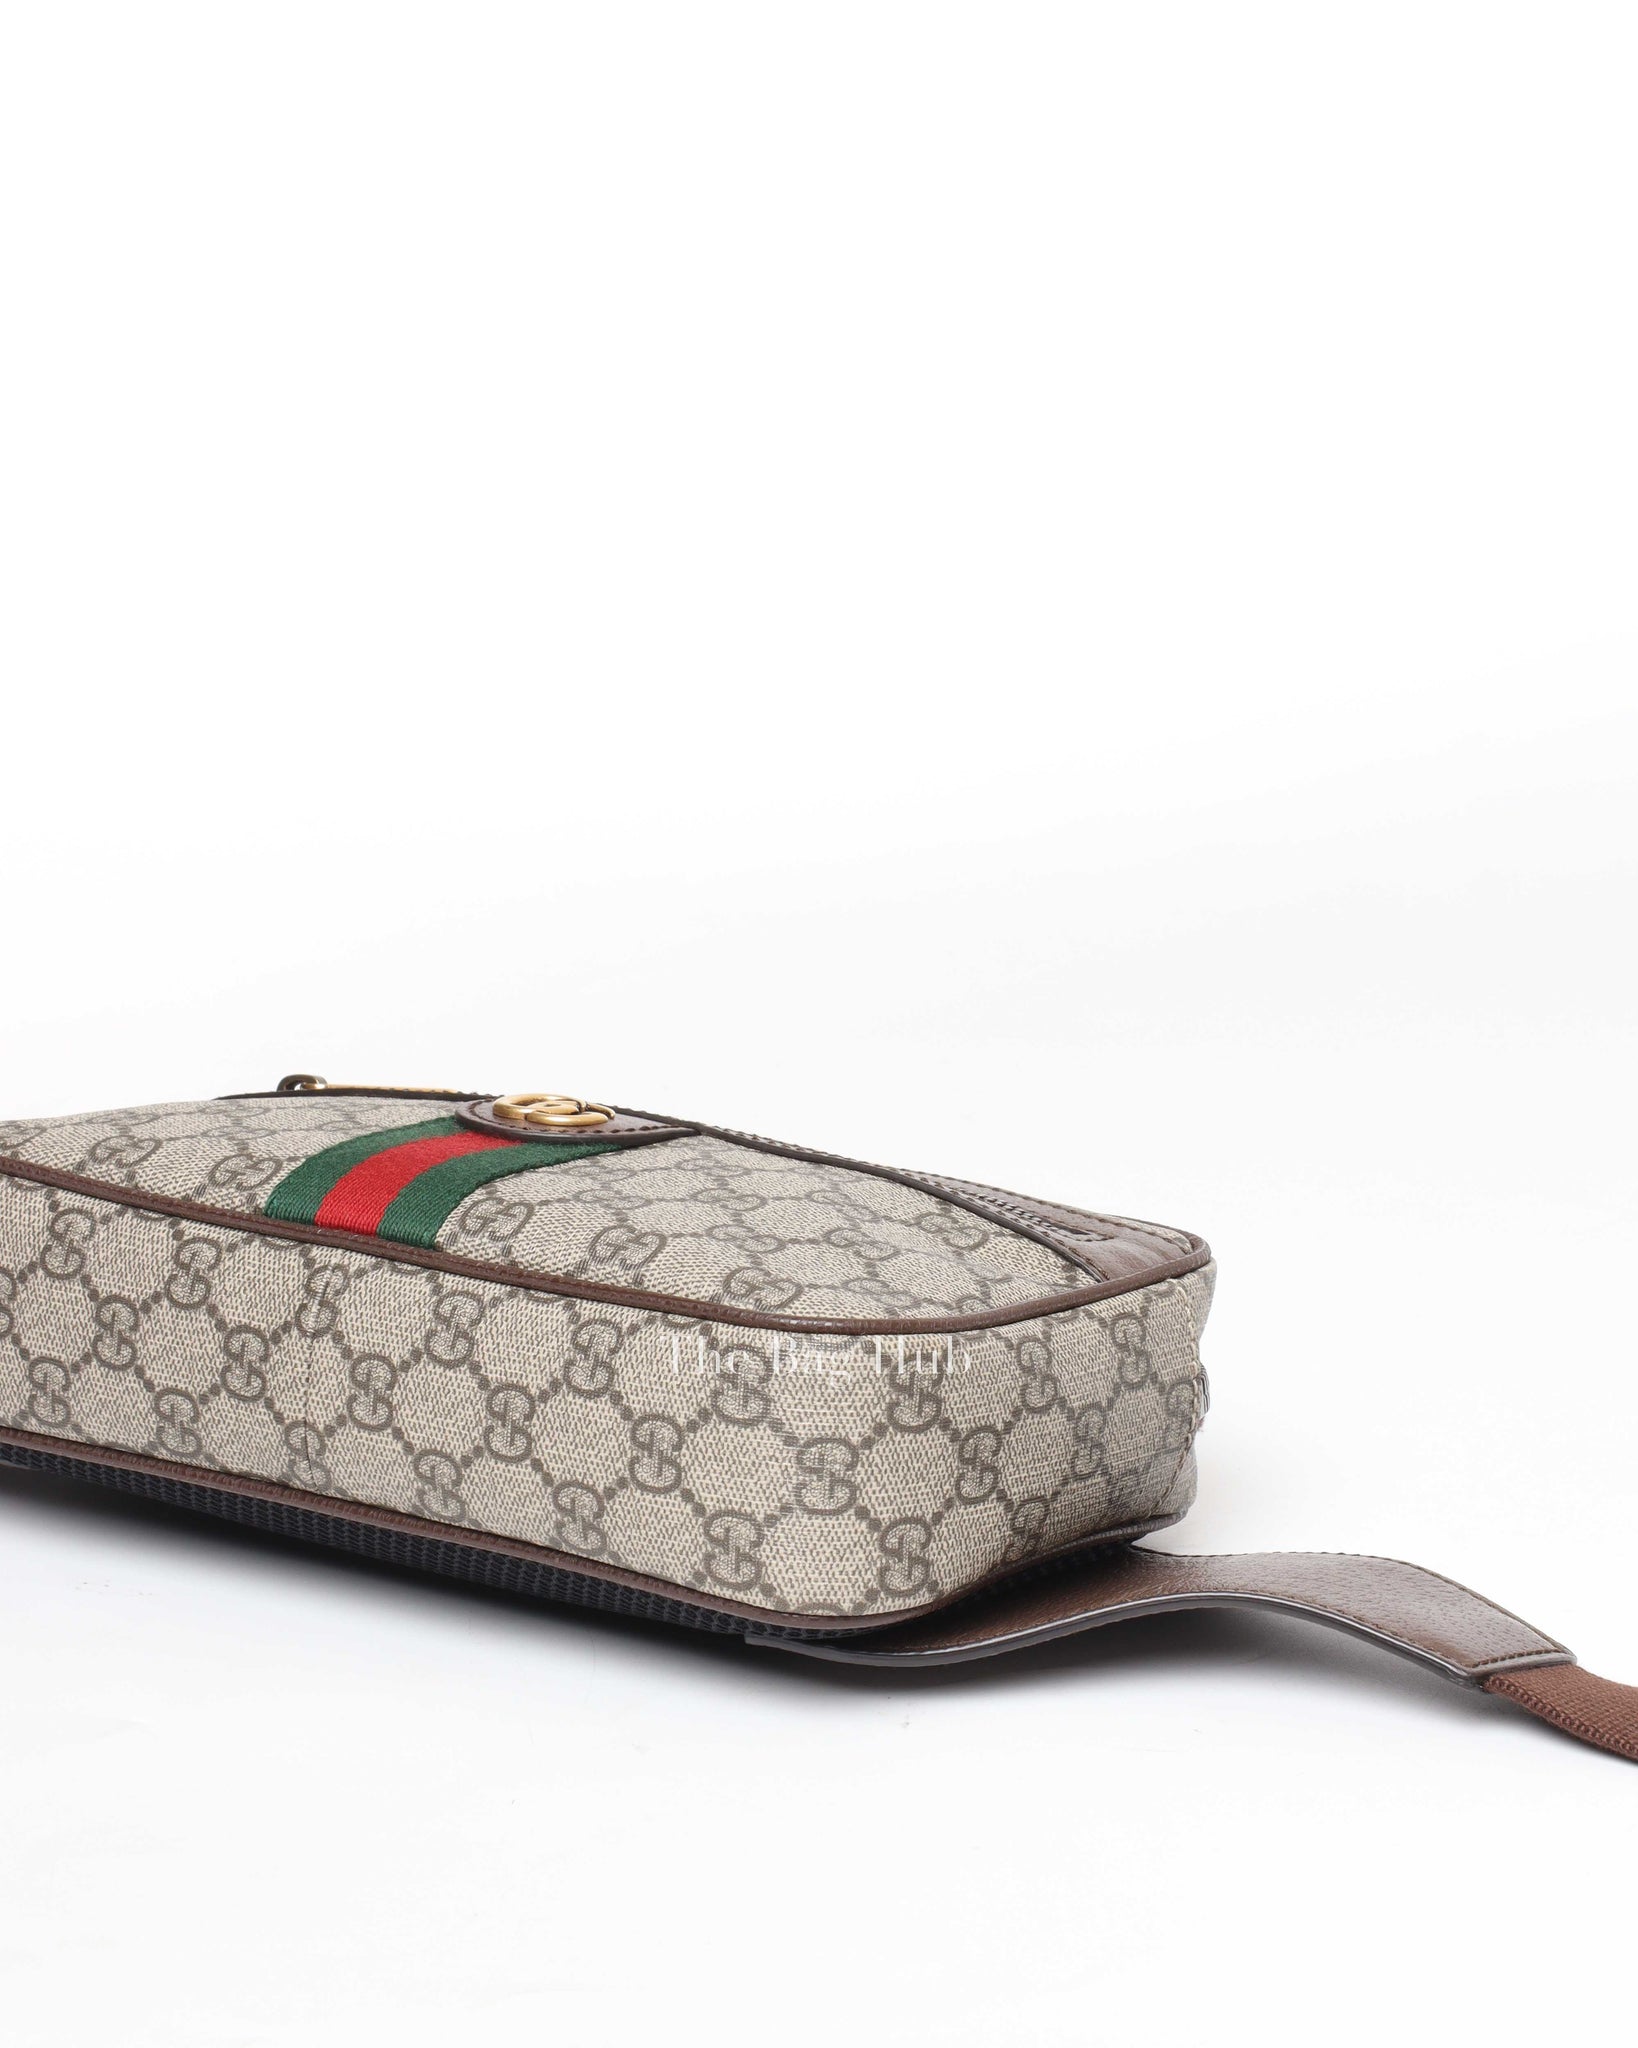 Gucci Beige/Brown GG Supreme Ophidia Men's Belt Bag-8